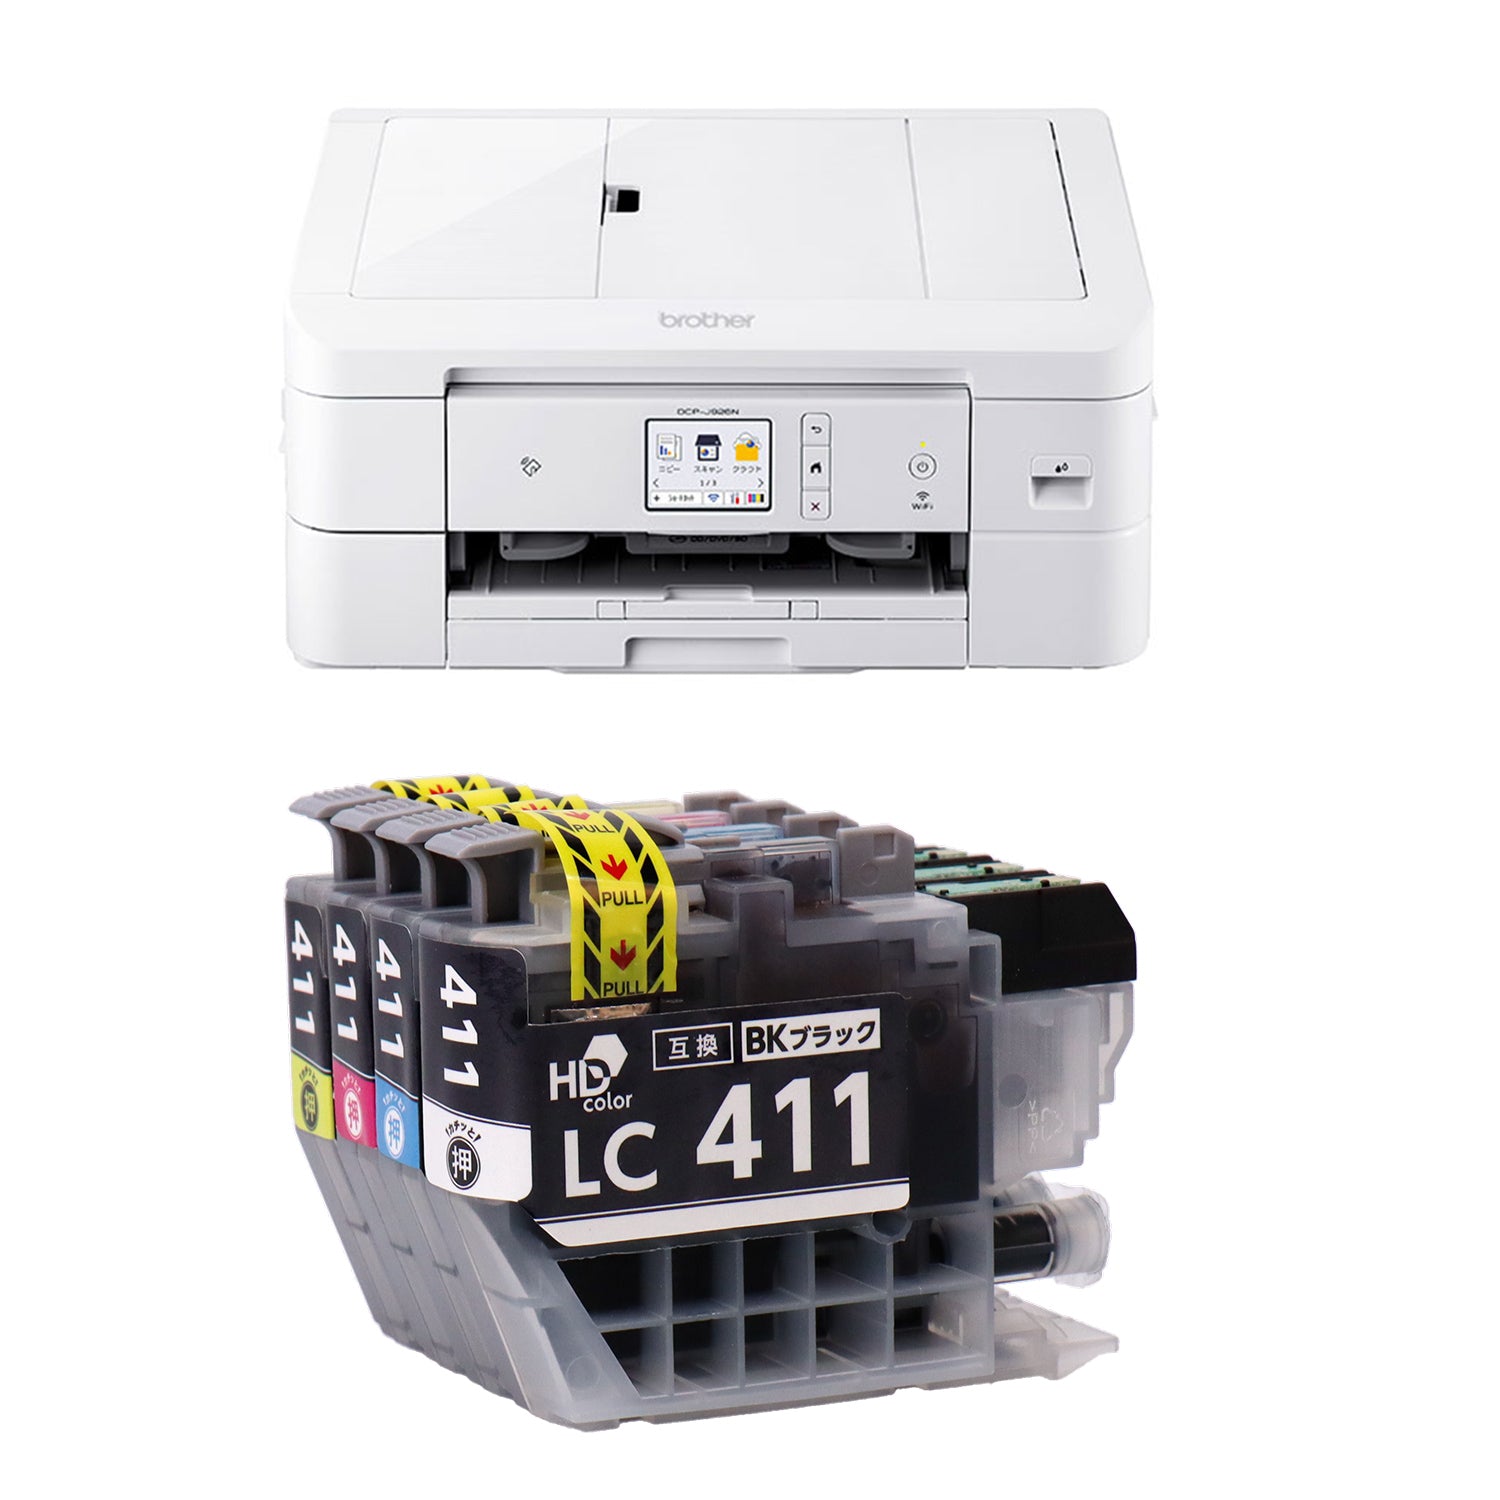 ブラザー PRIVIO DCP-J926N プリンターと互換インクのセット